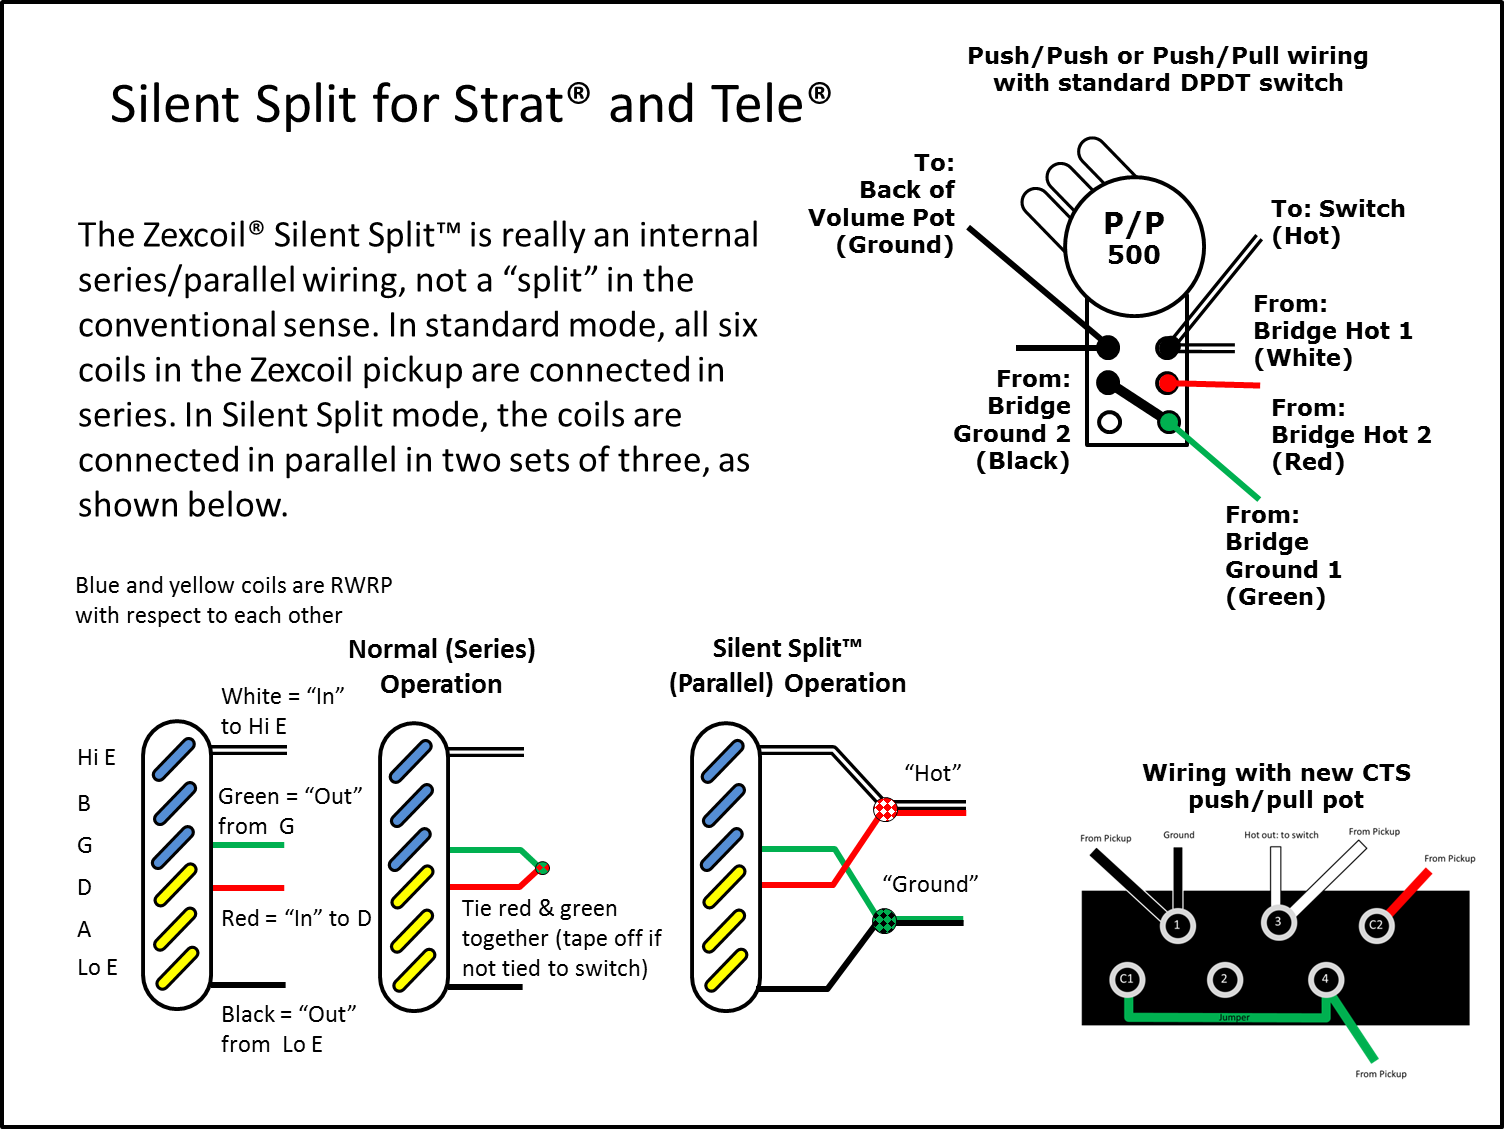 Silent Split Wiring for Strat & Tele